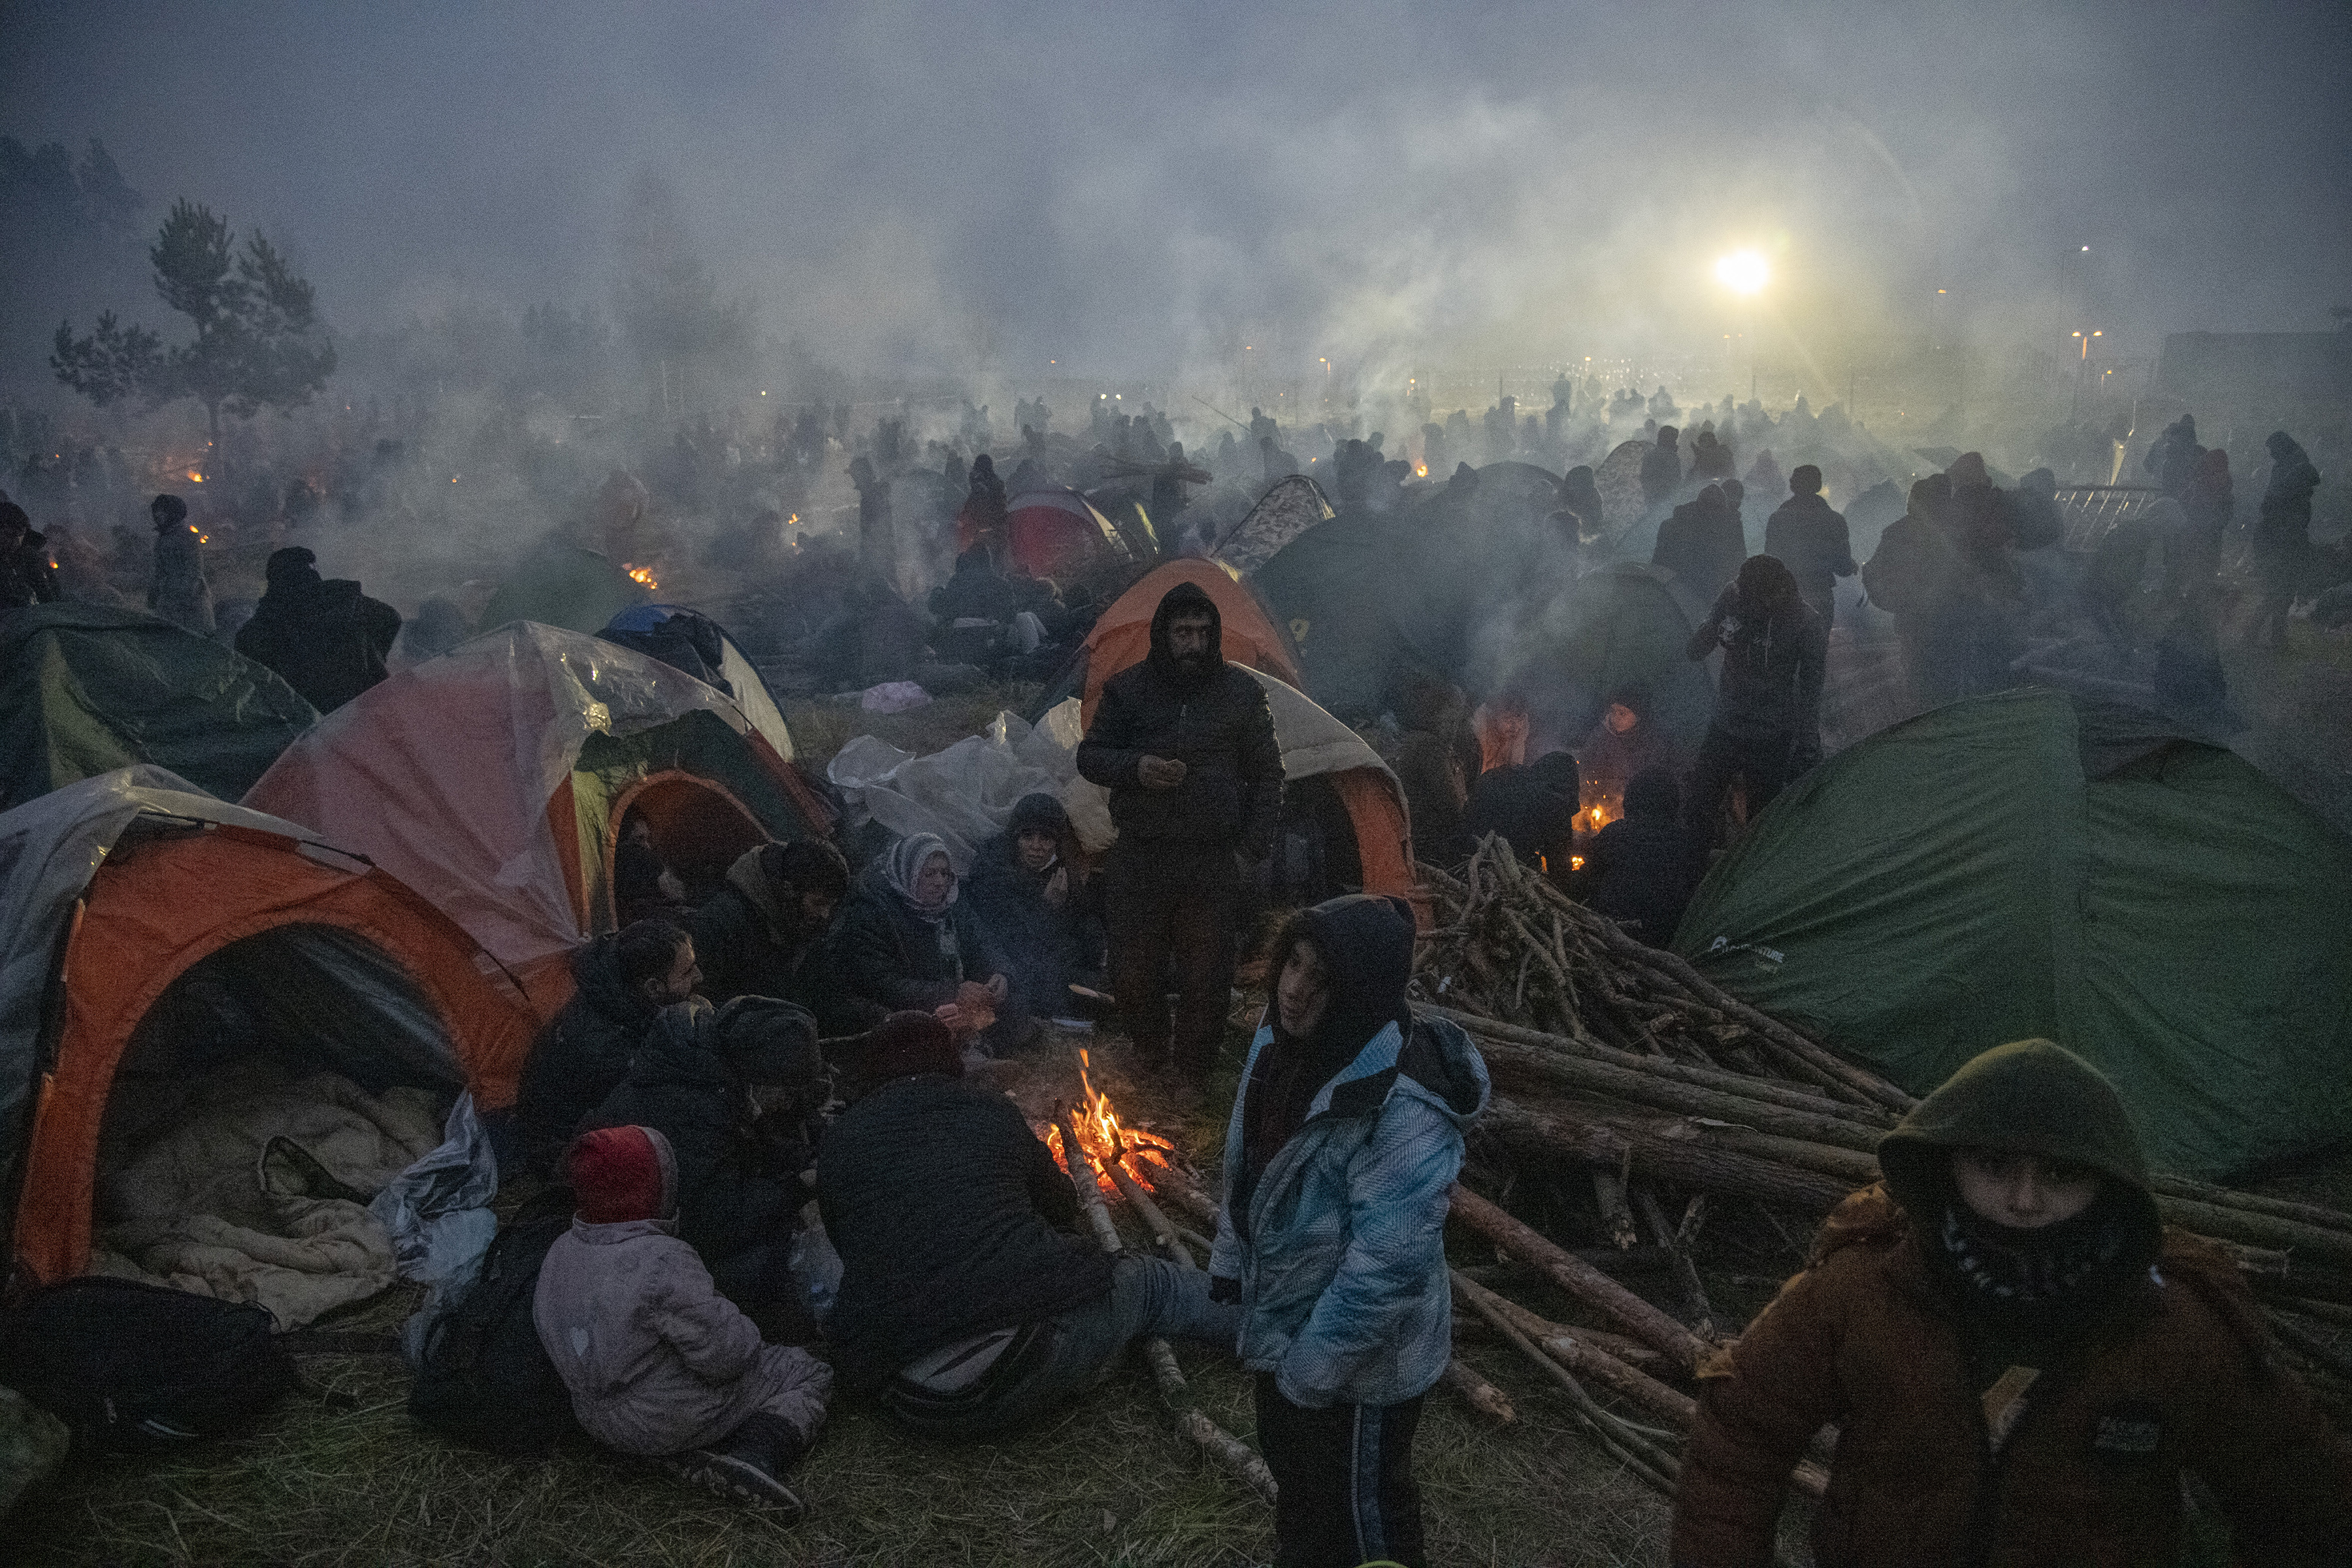 Los migrantes se reúnen alrededor de las fogatas mientras acampan para pasar la noche en la frontera con Polonia en Bielorrusia, el 16 de noviembre de 2021. Las imágenes en la frontera entre Bielorrusia y Polonia parecen familiares, pero esta emergencia tiene poco en común con oleadas anteriores de personas de Siria. Myanmar y Afganistán. (Foto Prensa Libre: James Hill / The New York Times)